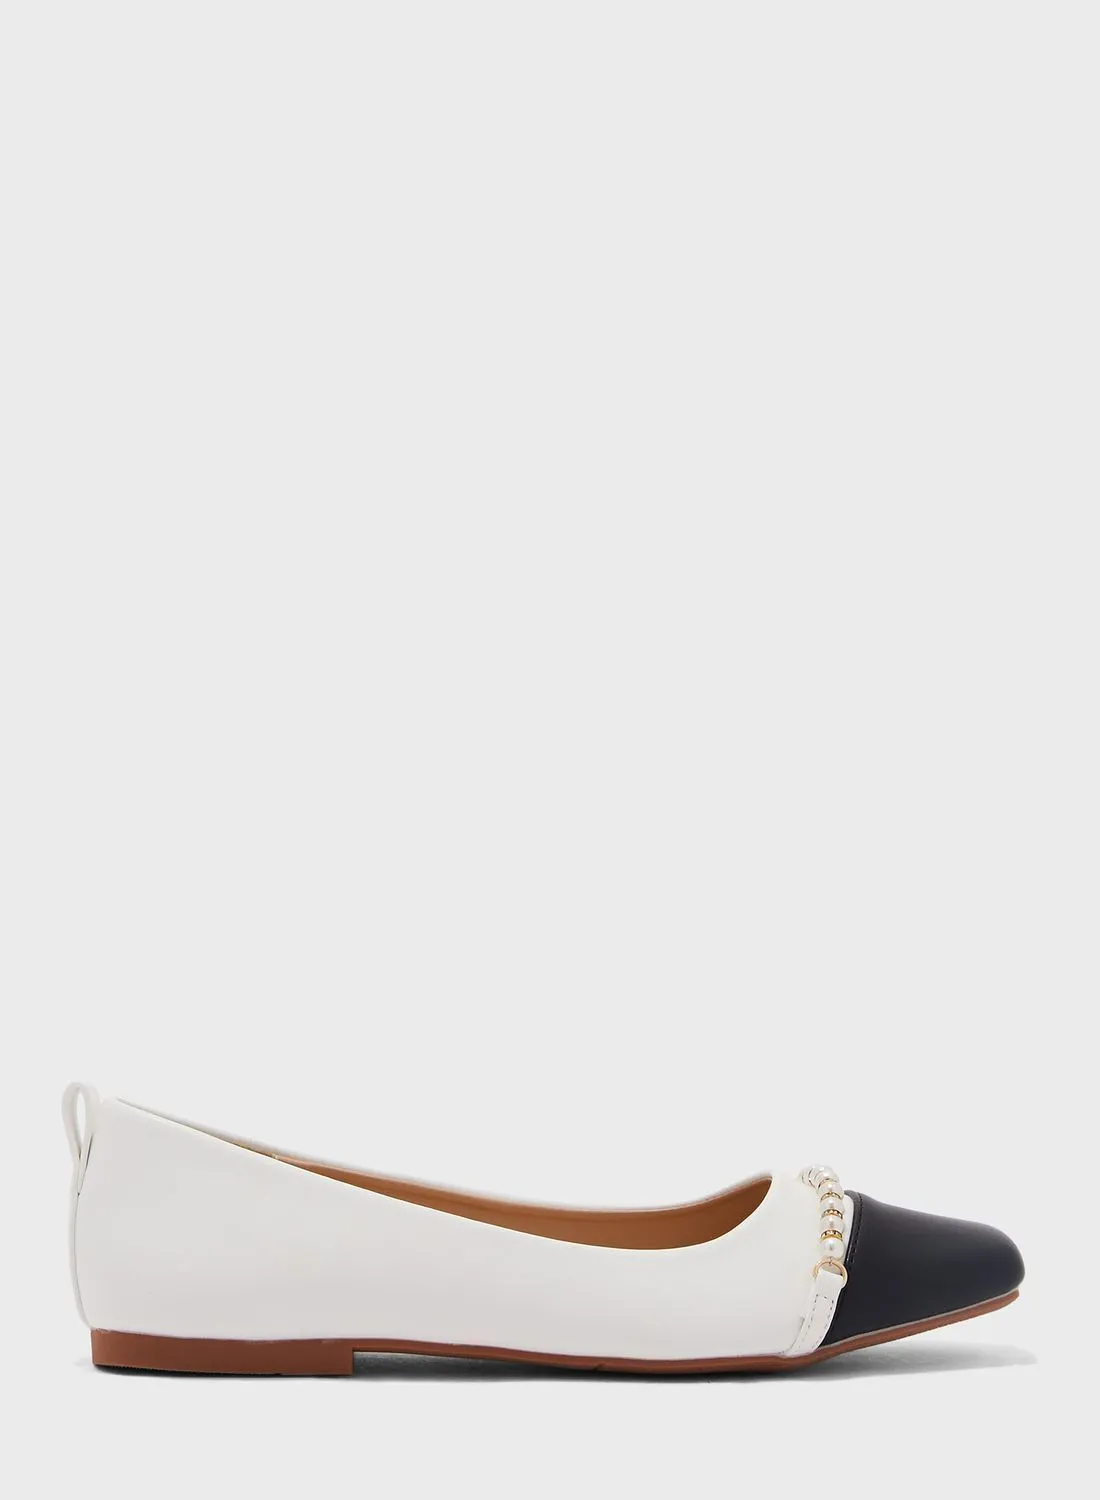 حذاء إيلا بيرل تريم بمقدمة مربعة مسطح باللون الأبيض